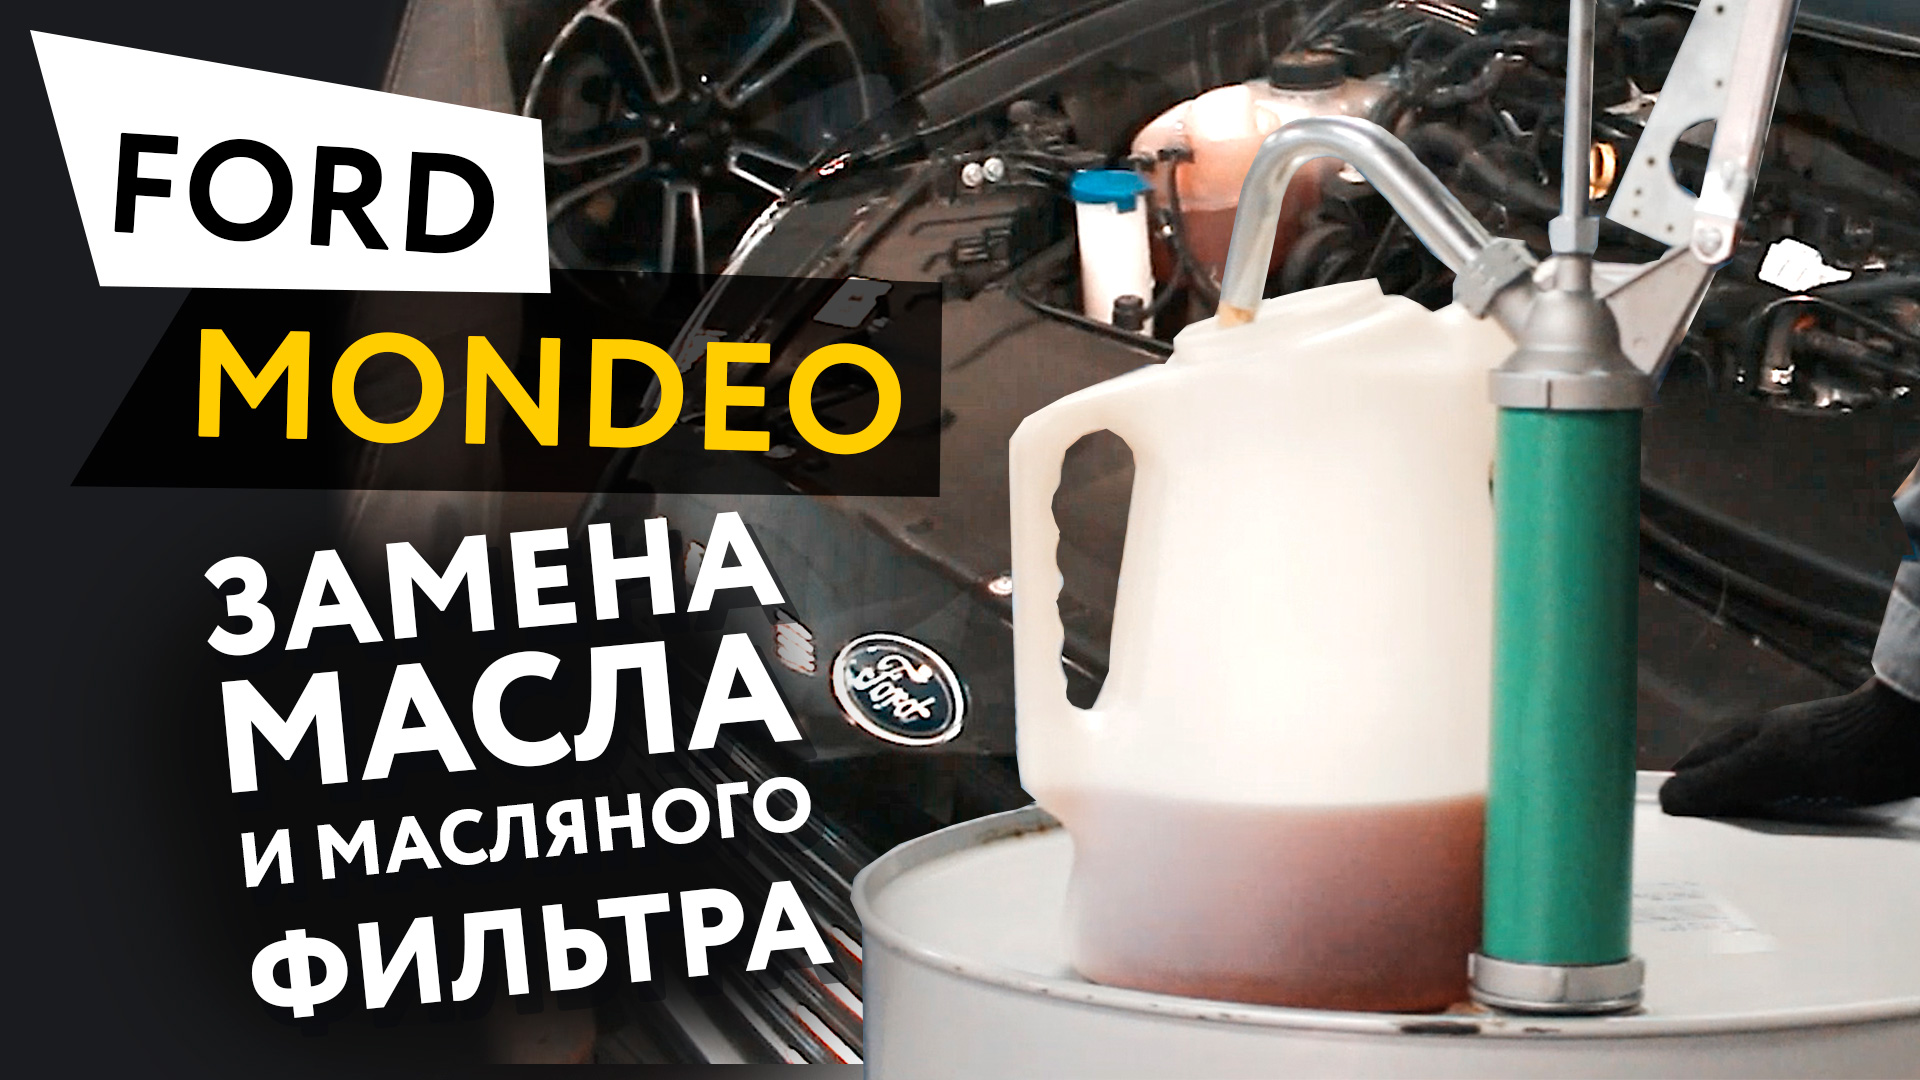 Замена масла и масляного фильтра (масляный сервис) в двигателе автомобиля Ford Mondeo 2,5 Duratec